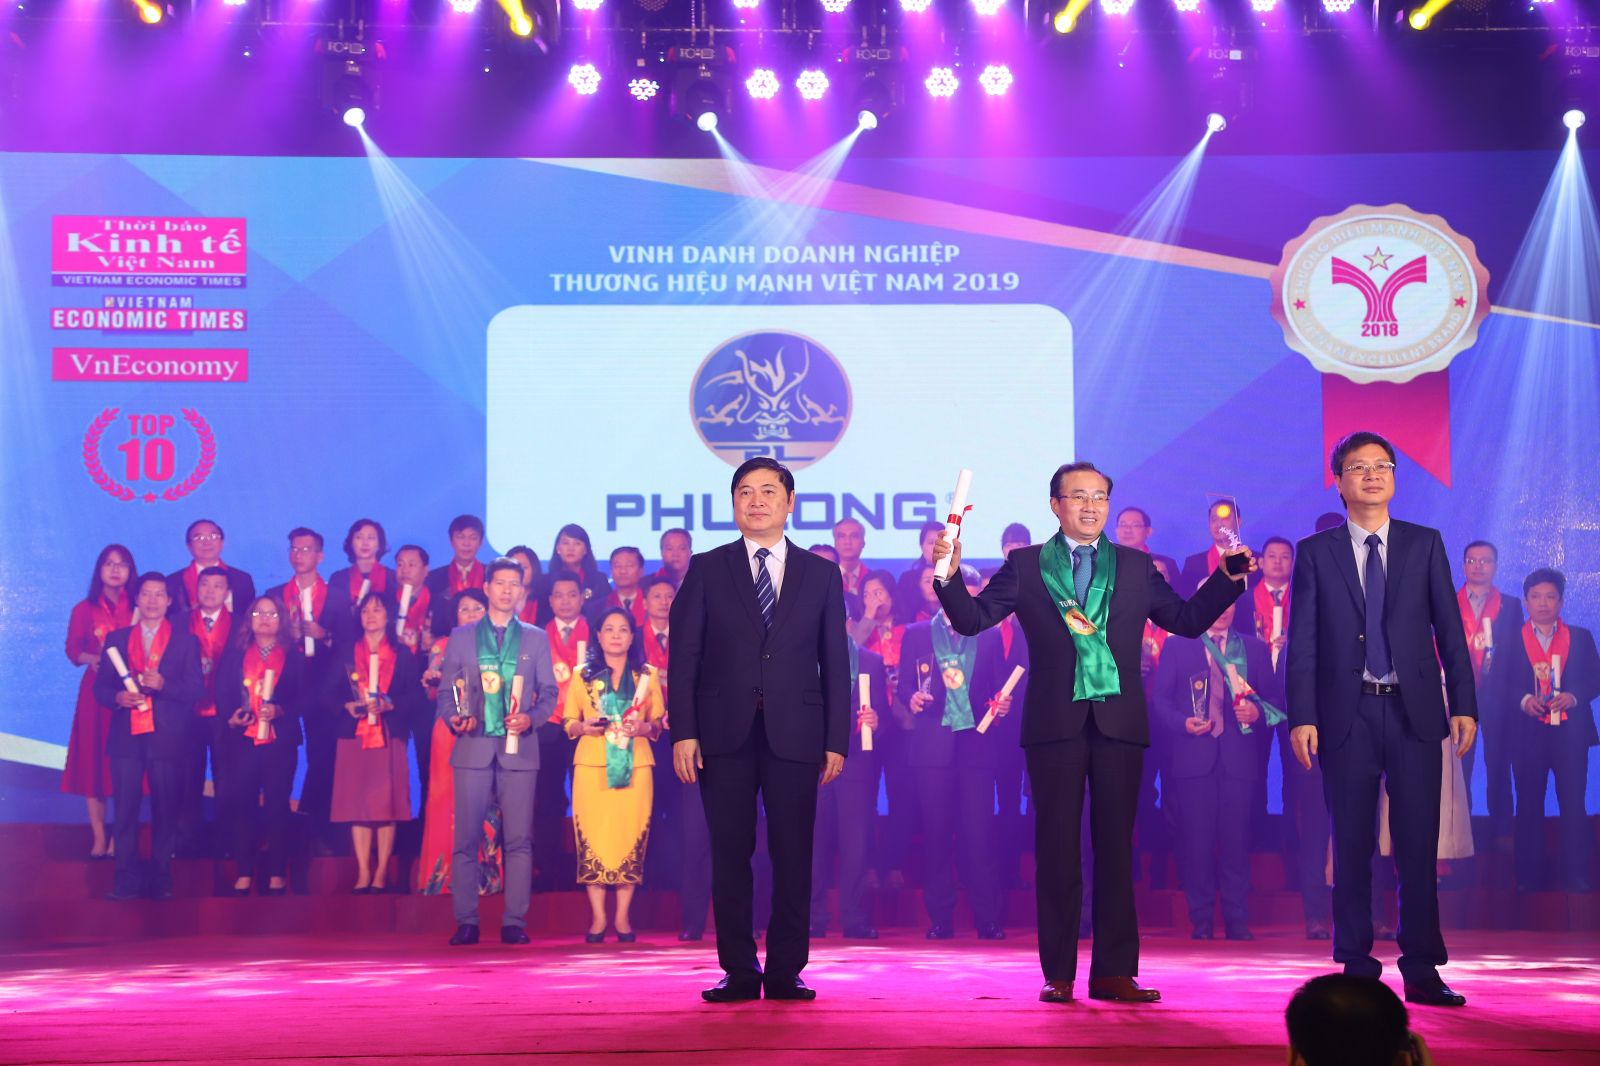 Ông Phùng Chu Cường – TGĐ Công ty Phú Long nhận giải thưởng Thương hiệu mạnh Việt Nam 2018